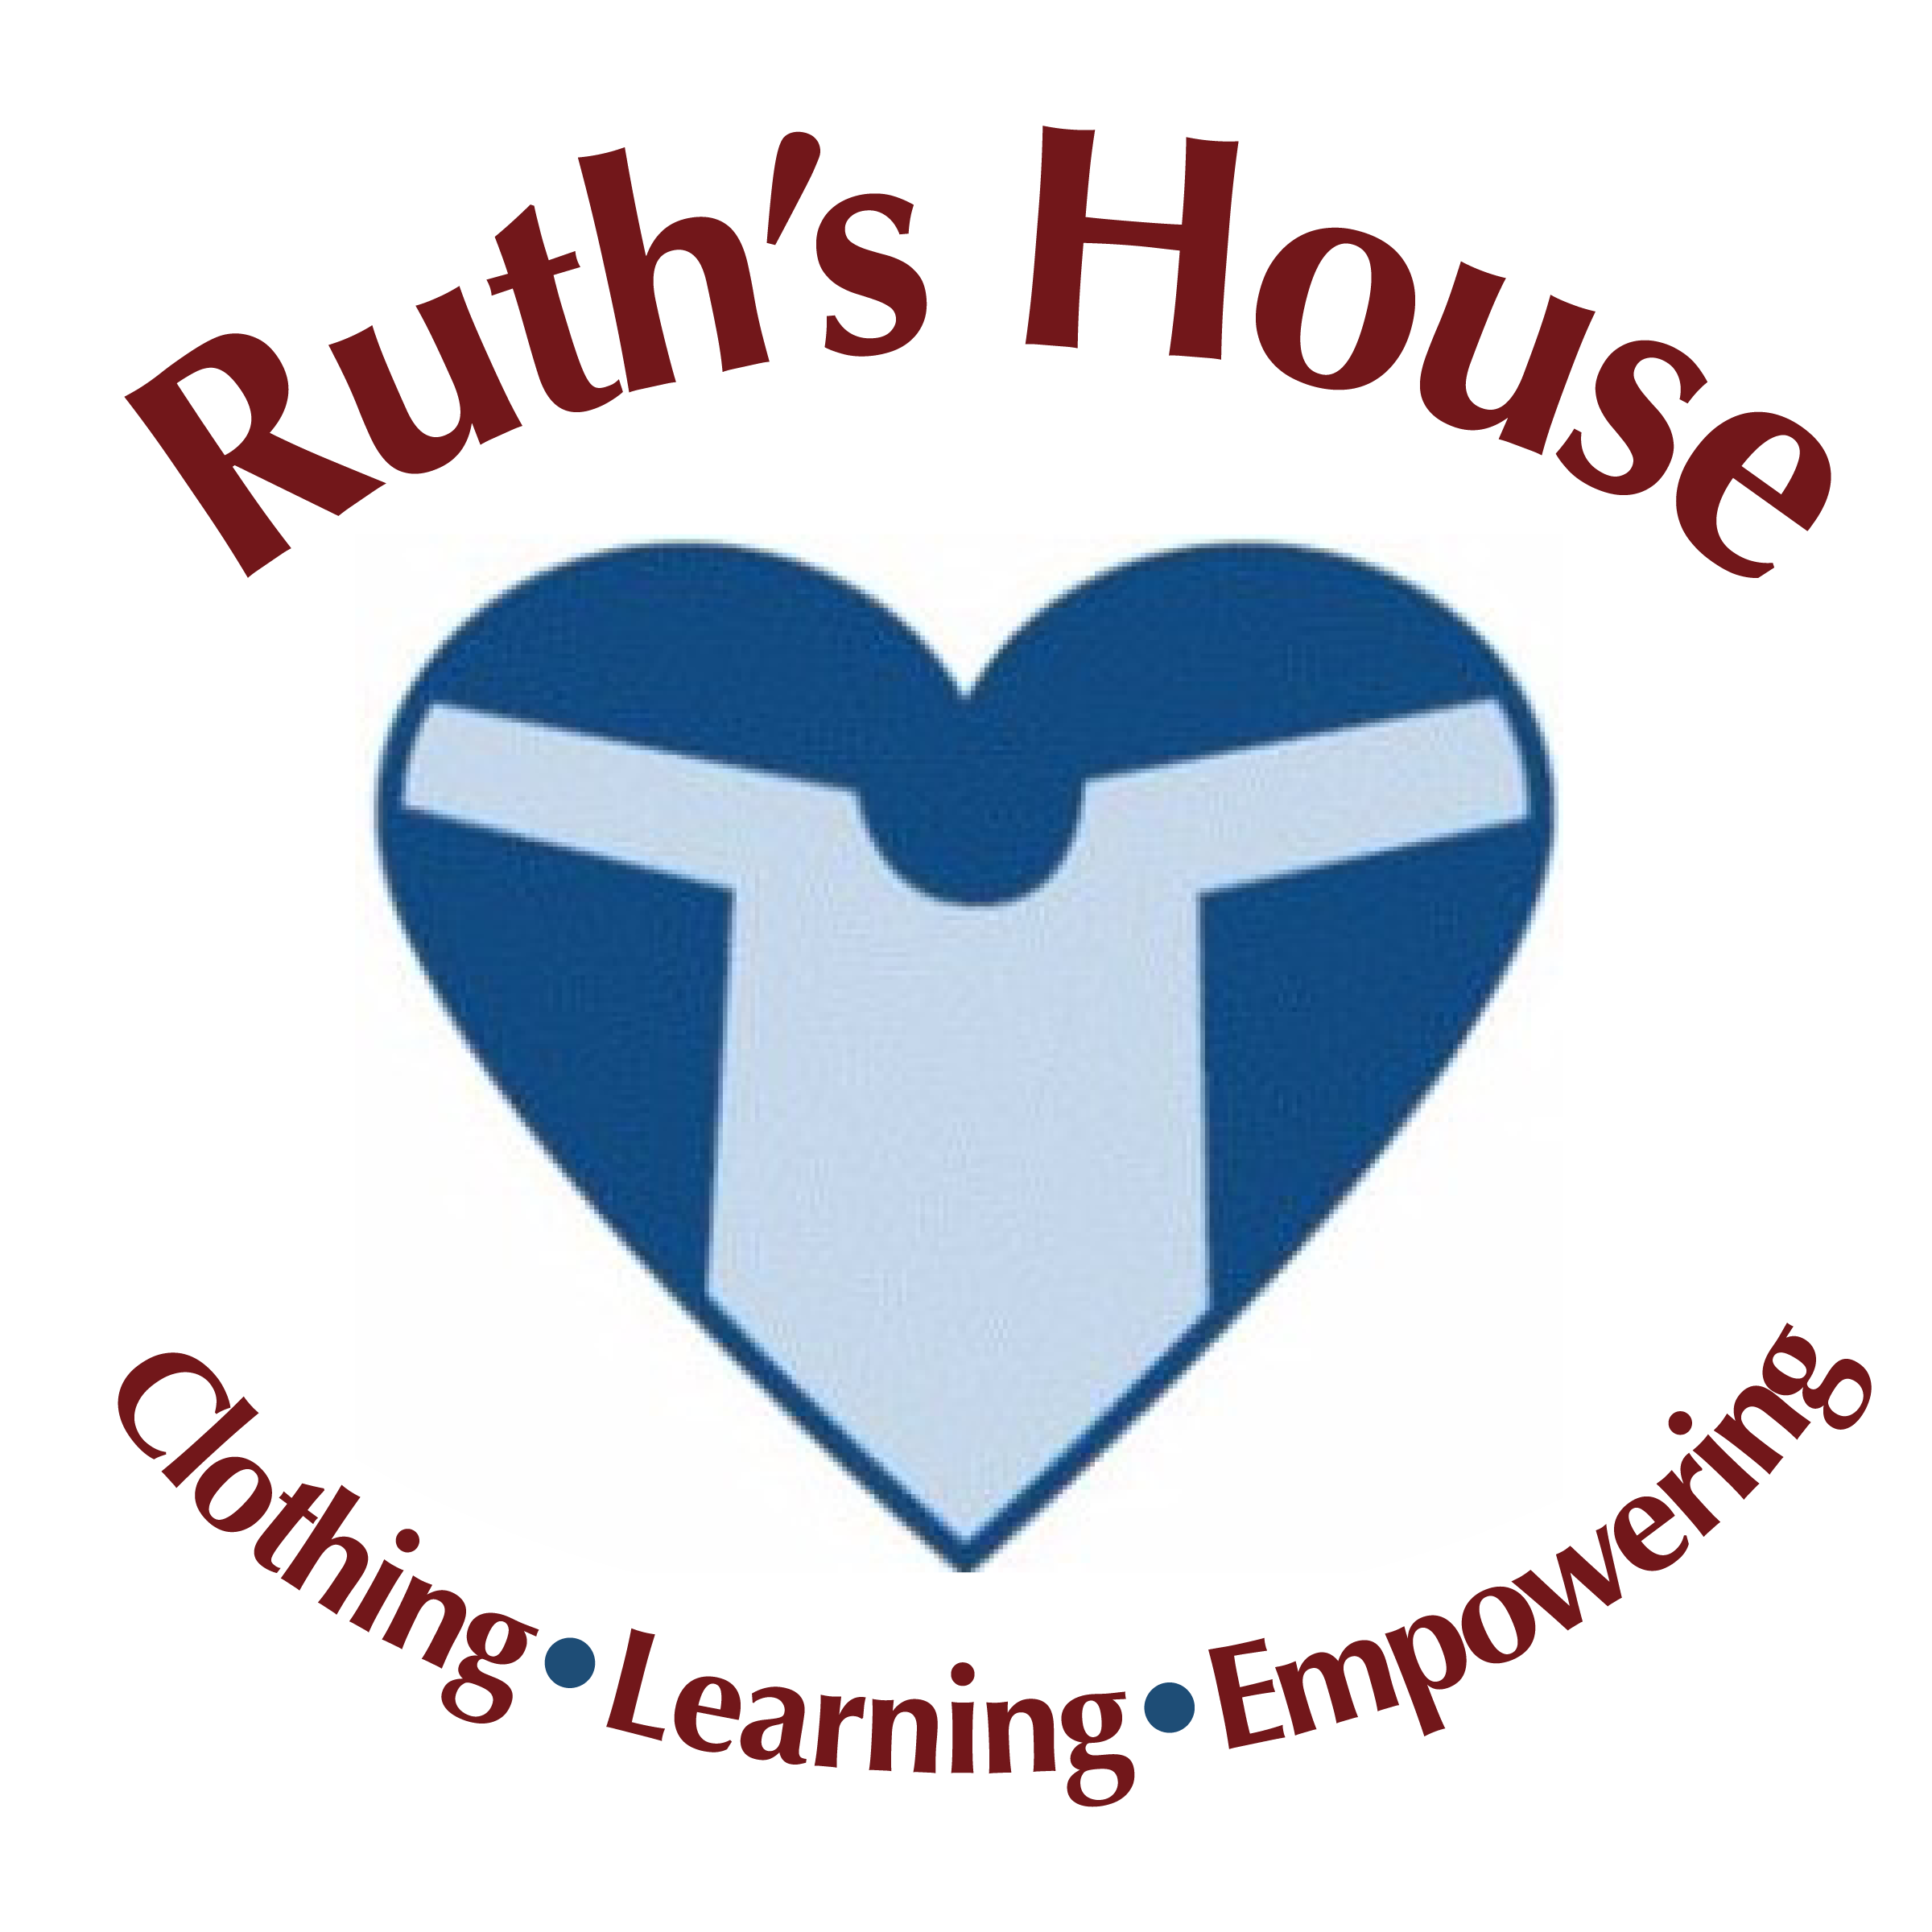 Ruth's House